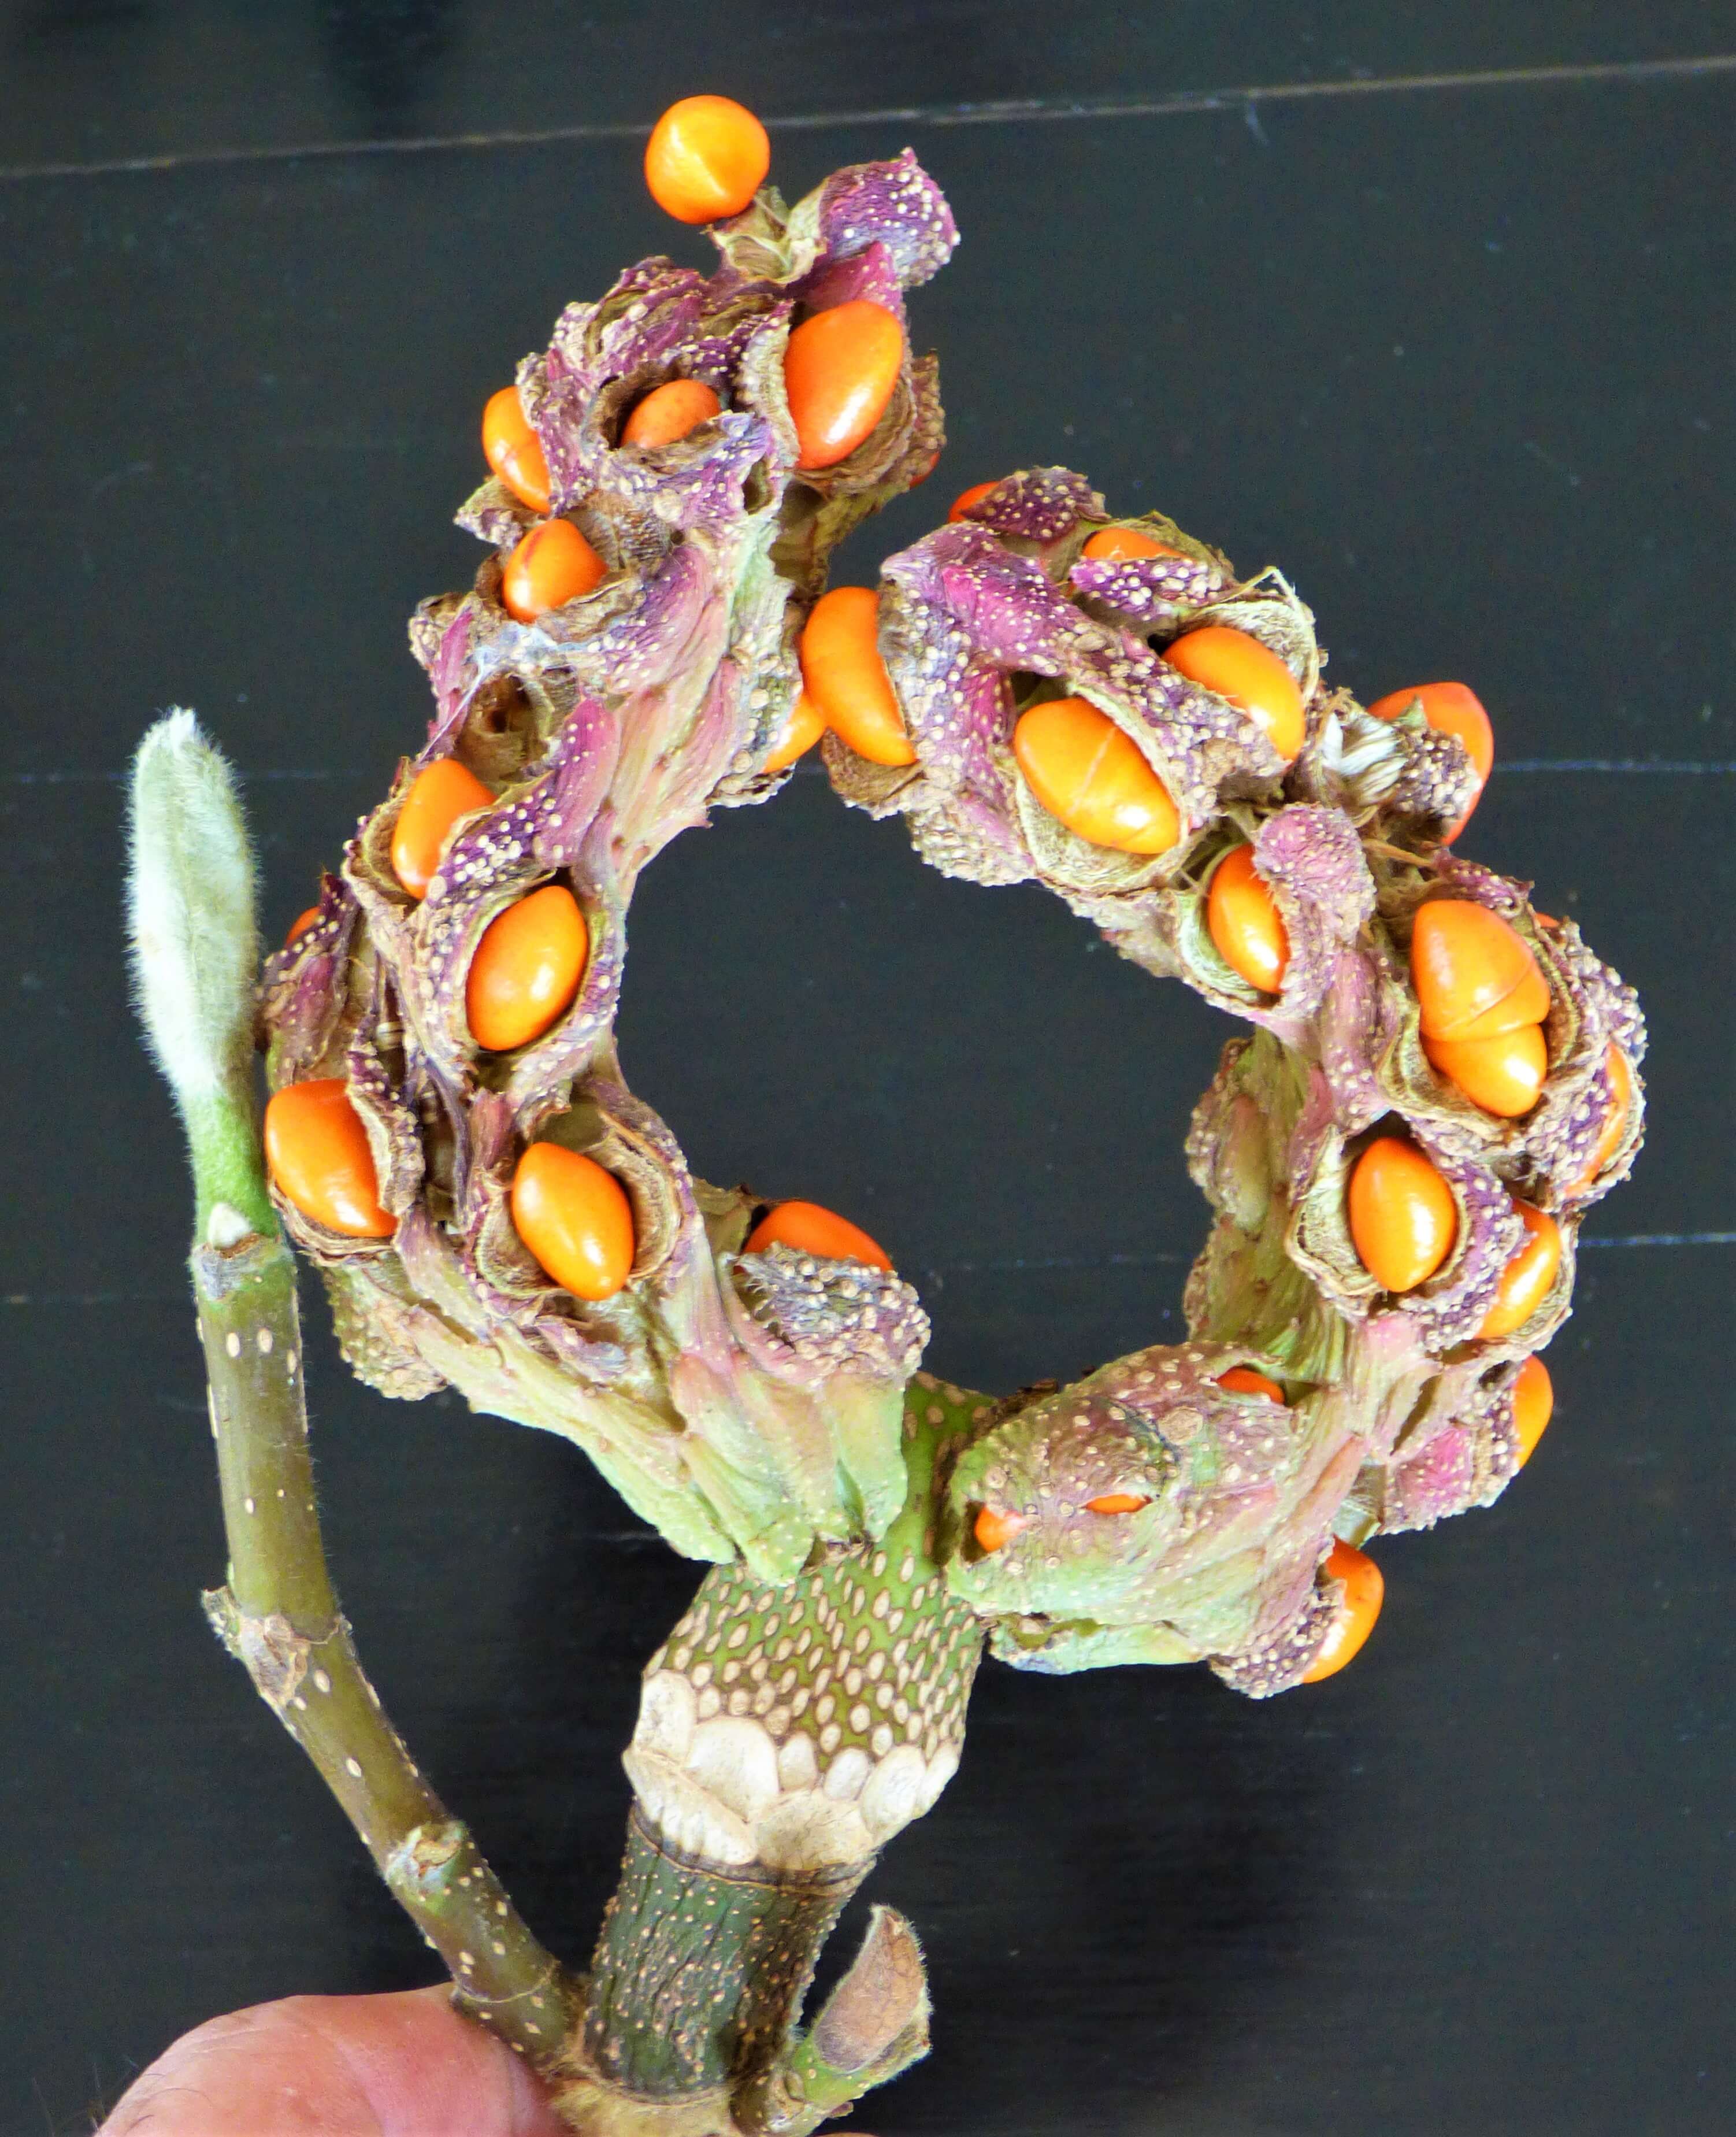 Mutated Magnolia seedpod